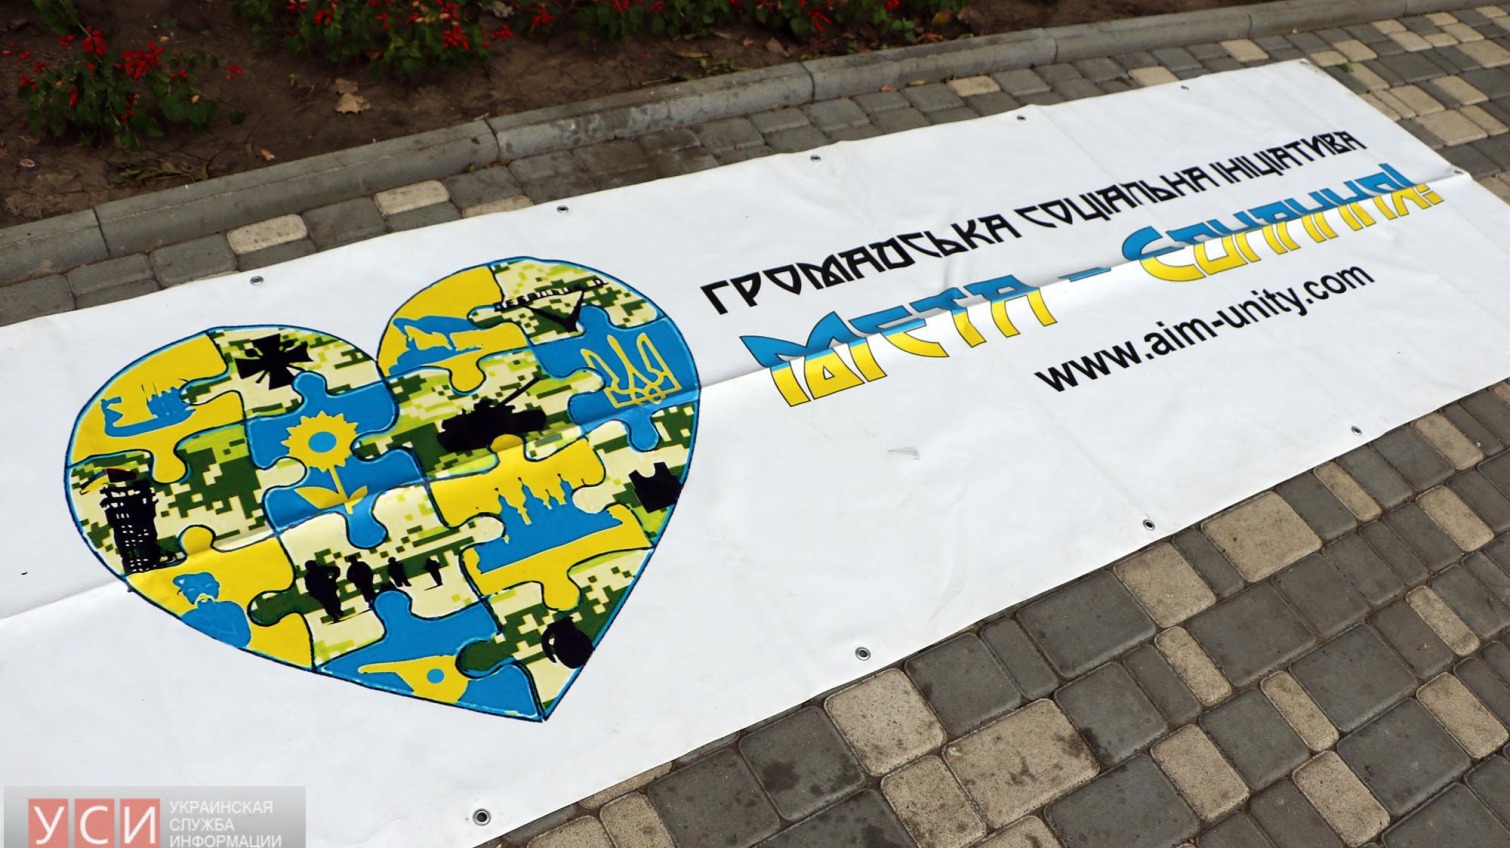 В Одессе прошел квест «Єдине місто — єдина країна» для фронтовиков, вернувшихся из зоны АТО (фото) «фото»